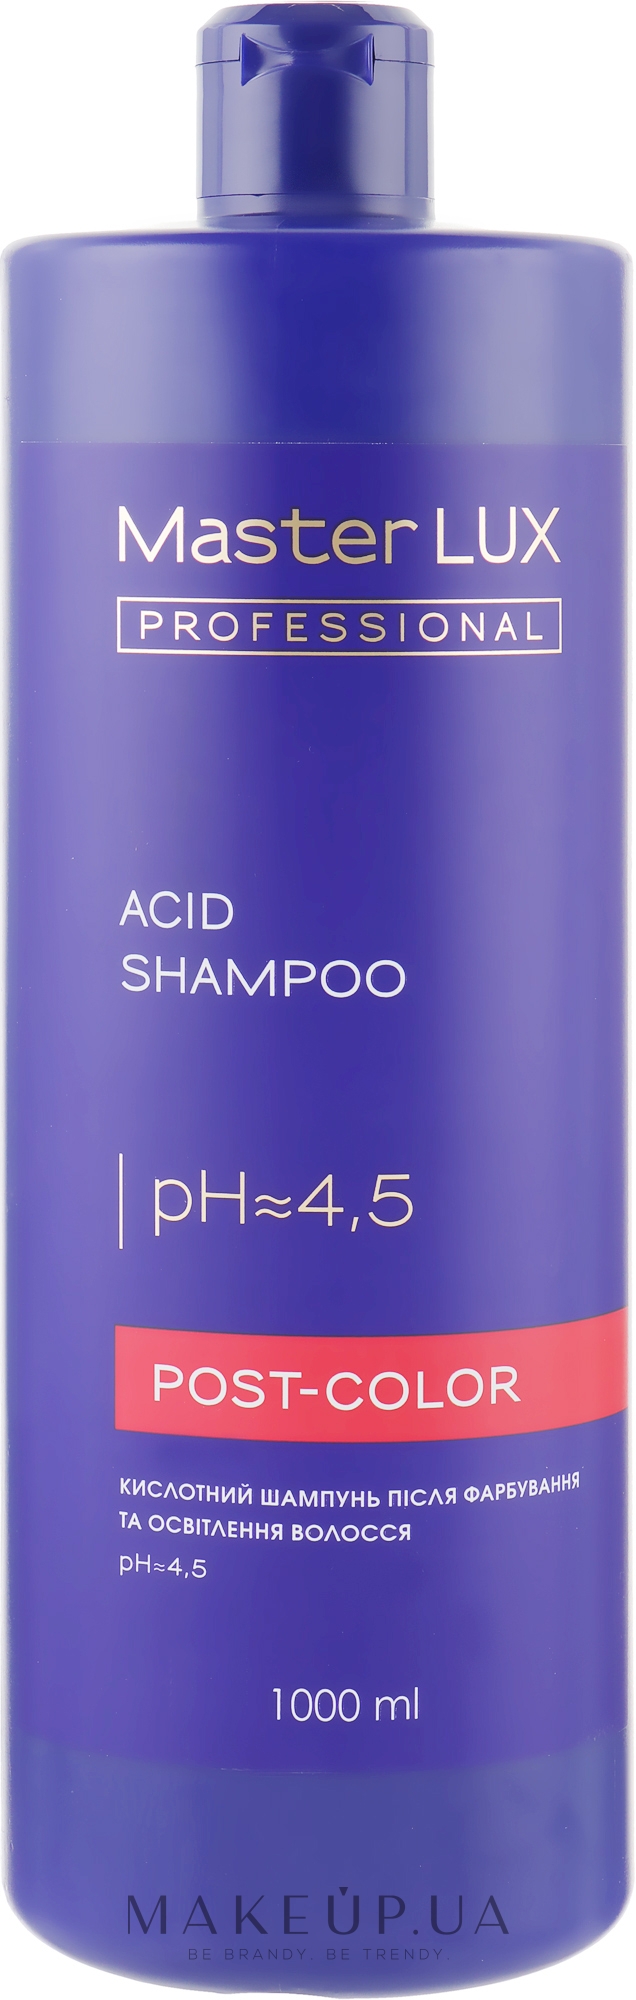 Кислотний шампунь після фарбування і освітлення волосся - Master LUX Professional Acid Shampoo Post Color — фото 1000ml